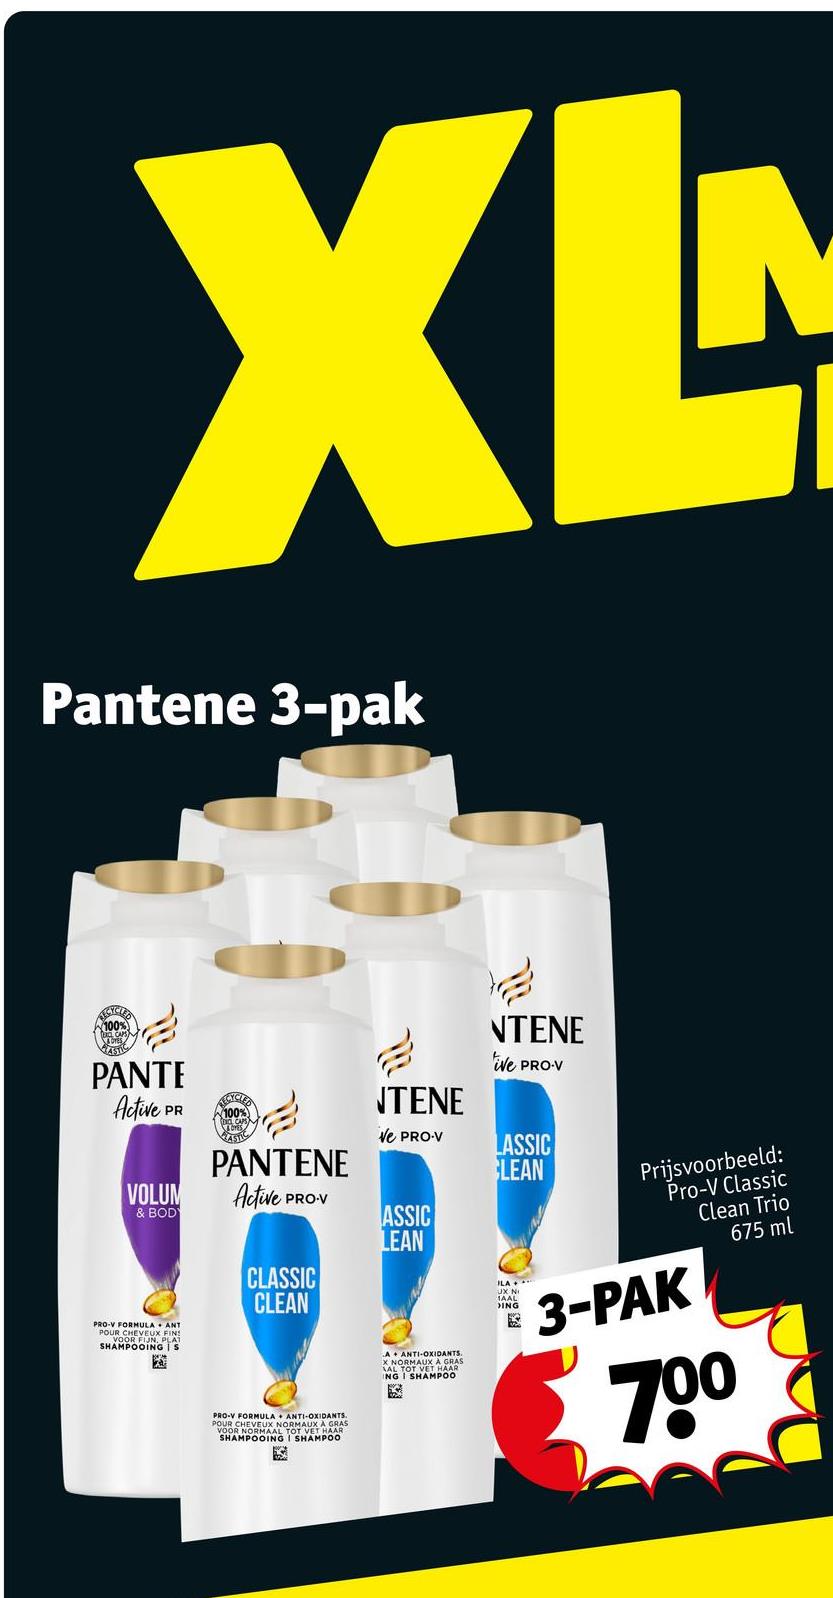 XL
Pantene 3-pak
100%
STIC
PANTE
Active
PR
VOLUM
& BODY
ANT
PRO-V FORMULA
POUR CHEVEUX FINS
VOOR FIJN, PLAT
SHAMPOOING S
100%
100%
PANTENE
Active
PRO-V
CLASSIC
CLEAN
PRO-V FORMULA + ANTI-OXIDANTS.
POUR CHEVEUX NORMAUX A GRAS
VOOR NORMAAL TOT VET HAAR
SHAMPOOING I SHAMPOO
NTENE
Ve PRO-V
ASSIC
LEAN
A
ANTI-OXIDANTS.
X NORMAUX A GRAS
ING I SHAMPOO
NTENE
ive PRO-V
LASSIC
LEAN
Prijsvoorbeeld:
Pro-V Classic
Clean Trio
675 ml
ILA
DING
3-PAK
700